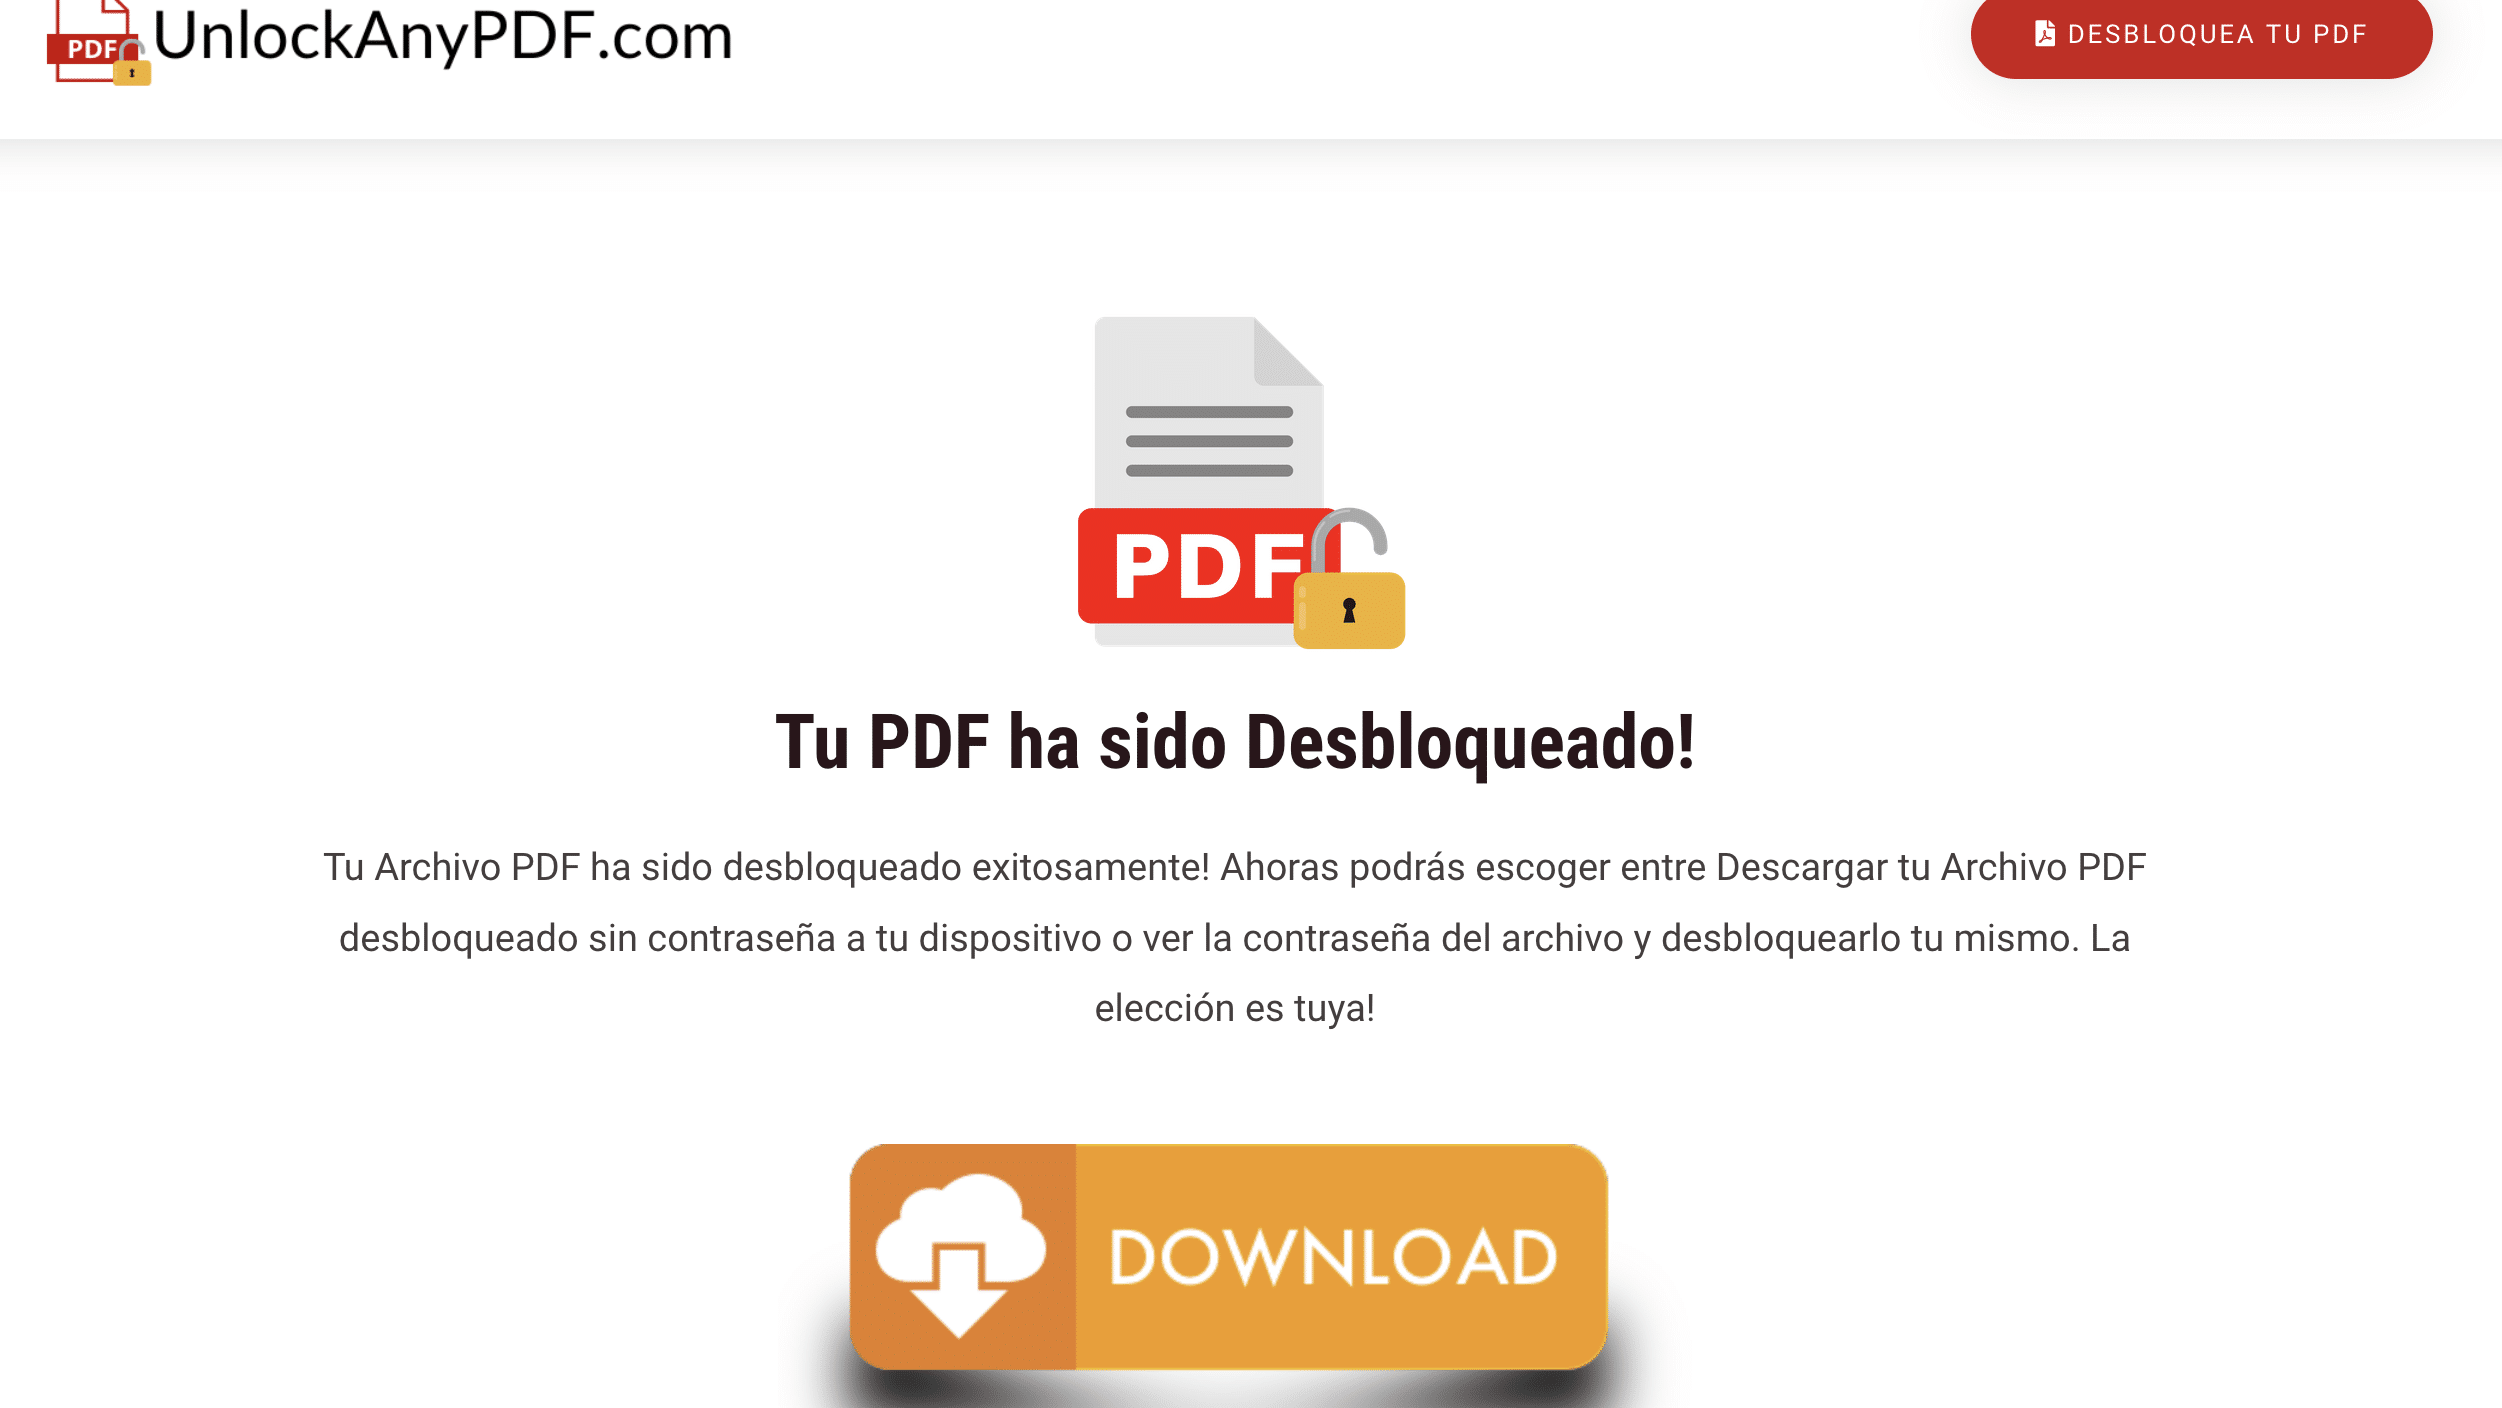 Descarga tu archivo PDF sin contraseña